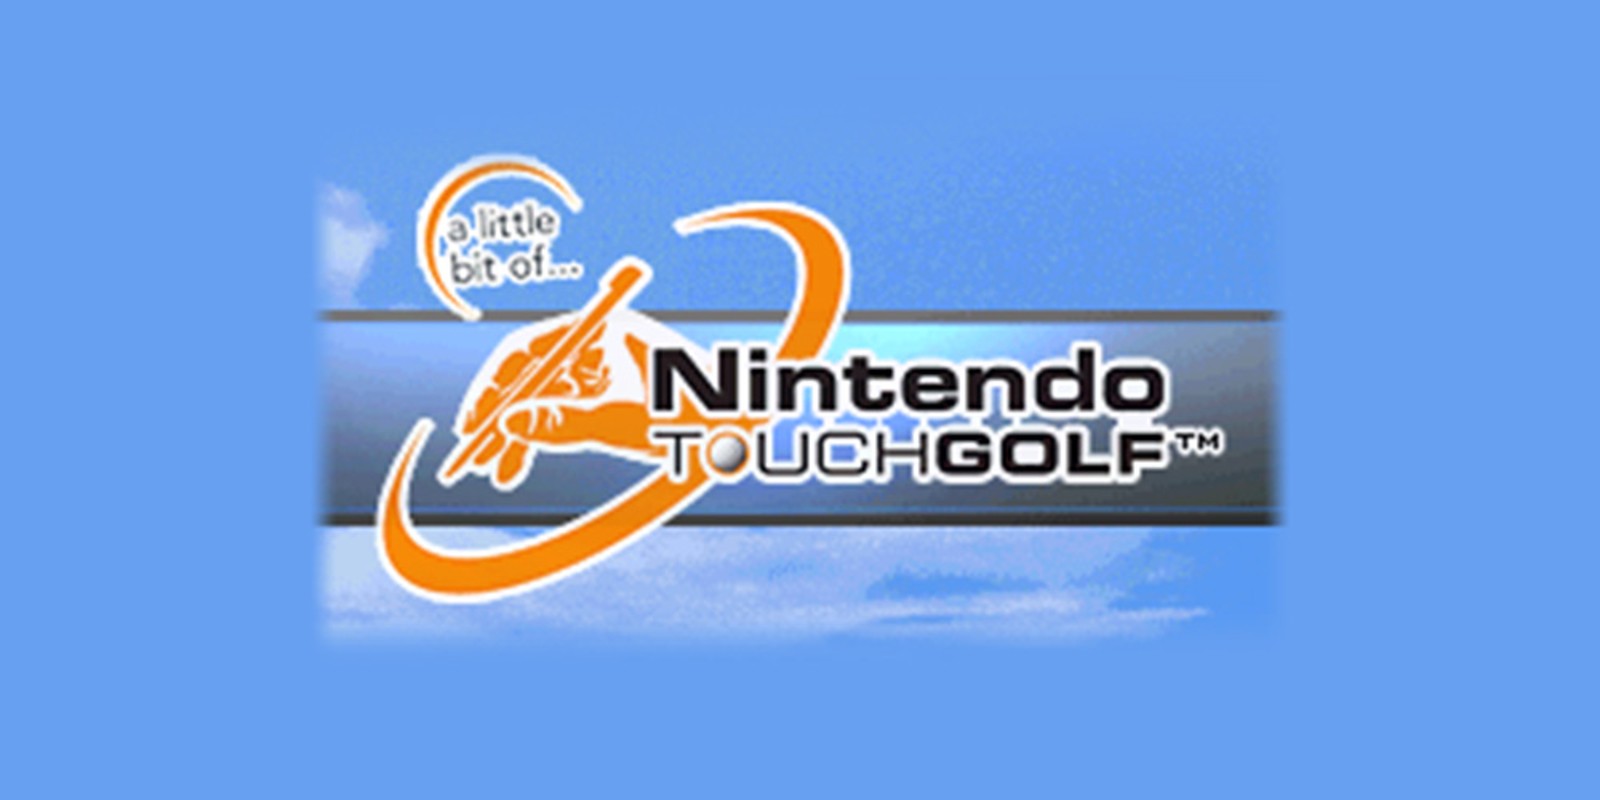 A Little Bit of... Nintendo Touch Golf™